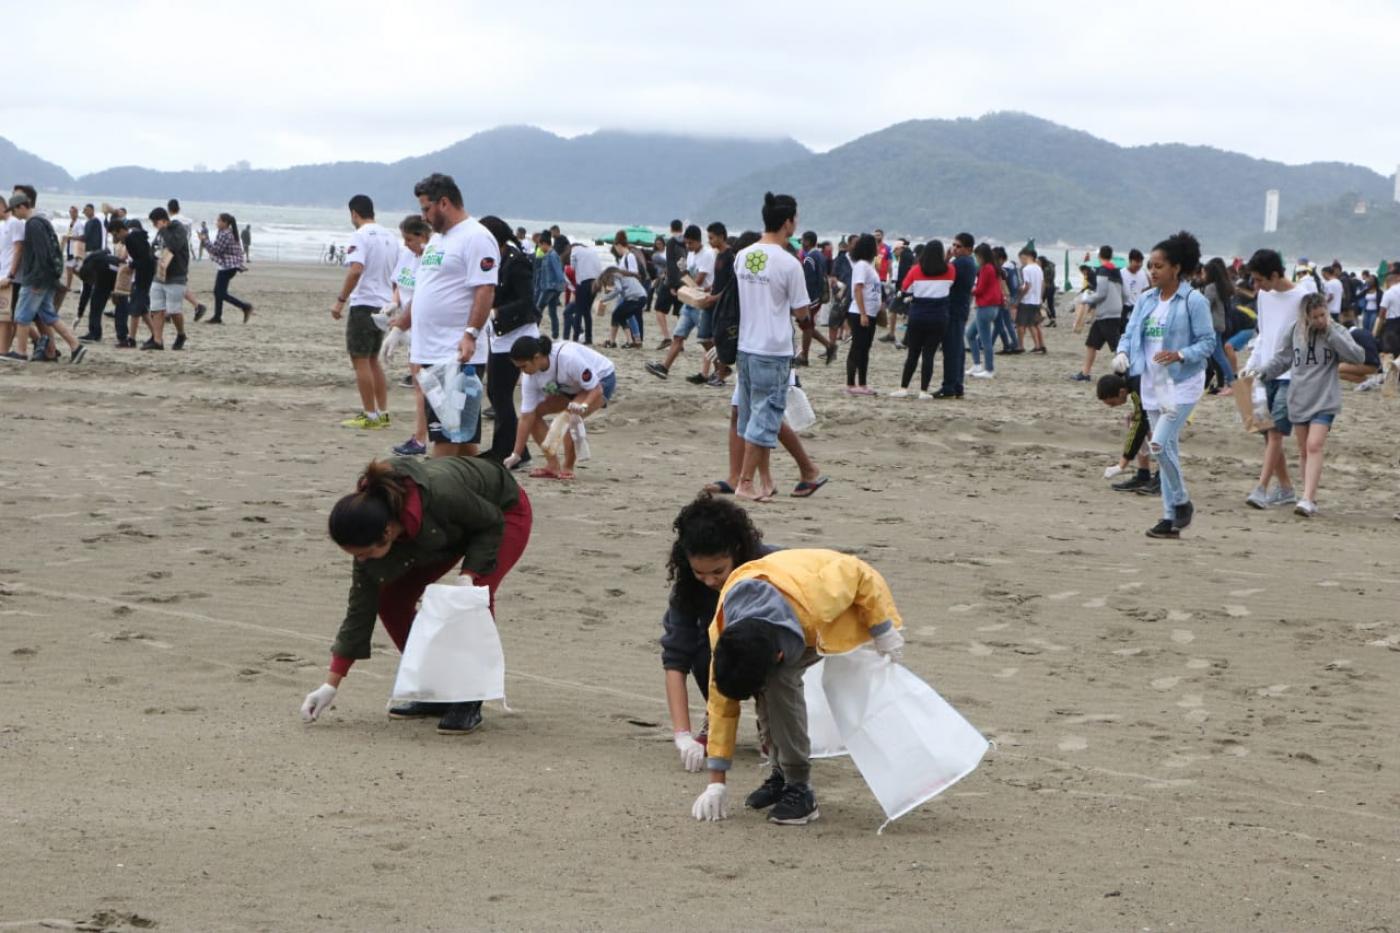 Três pessoas agachadas recolhem lixo da areia da praia, com cerca de 100 pessoas ao fundo vom sacolas plásticas nas mãos